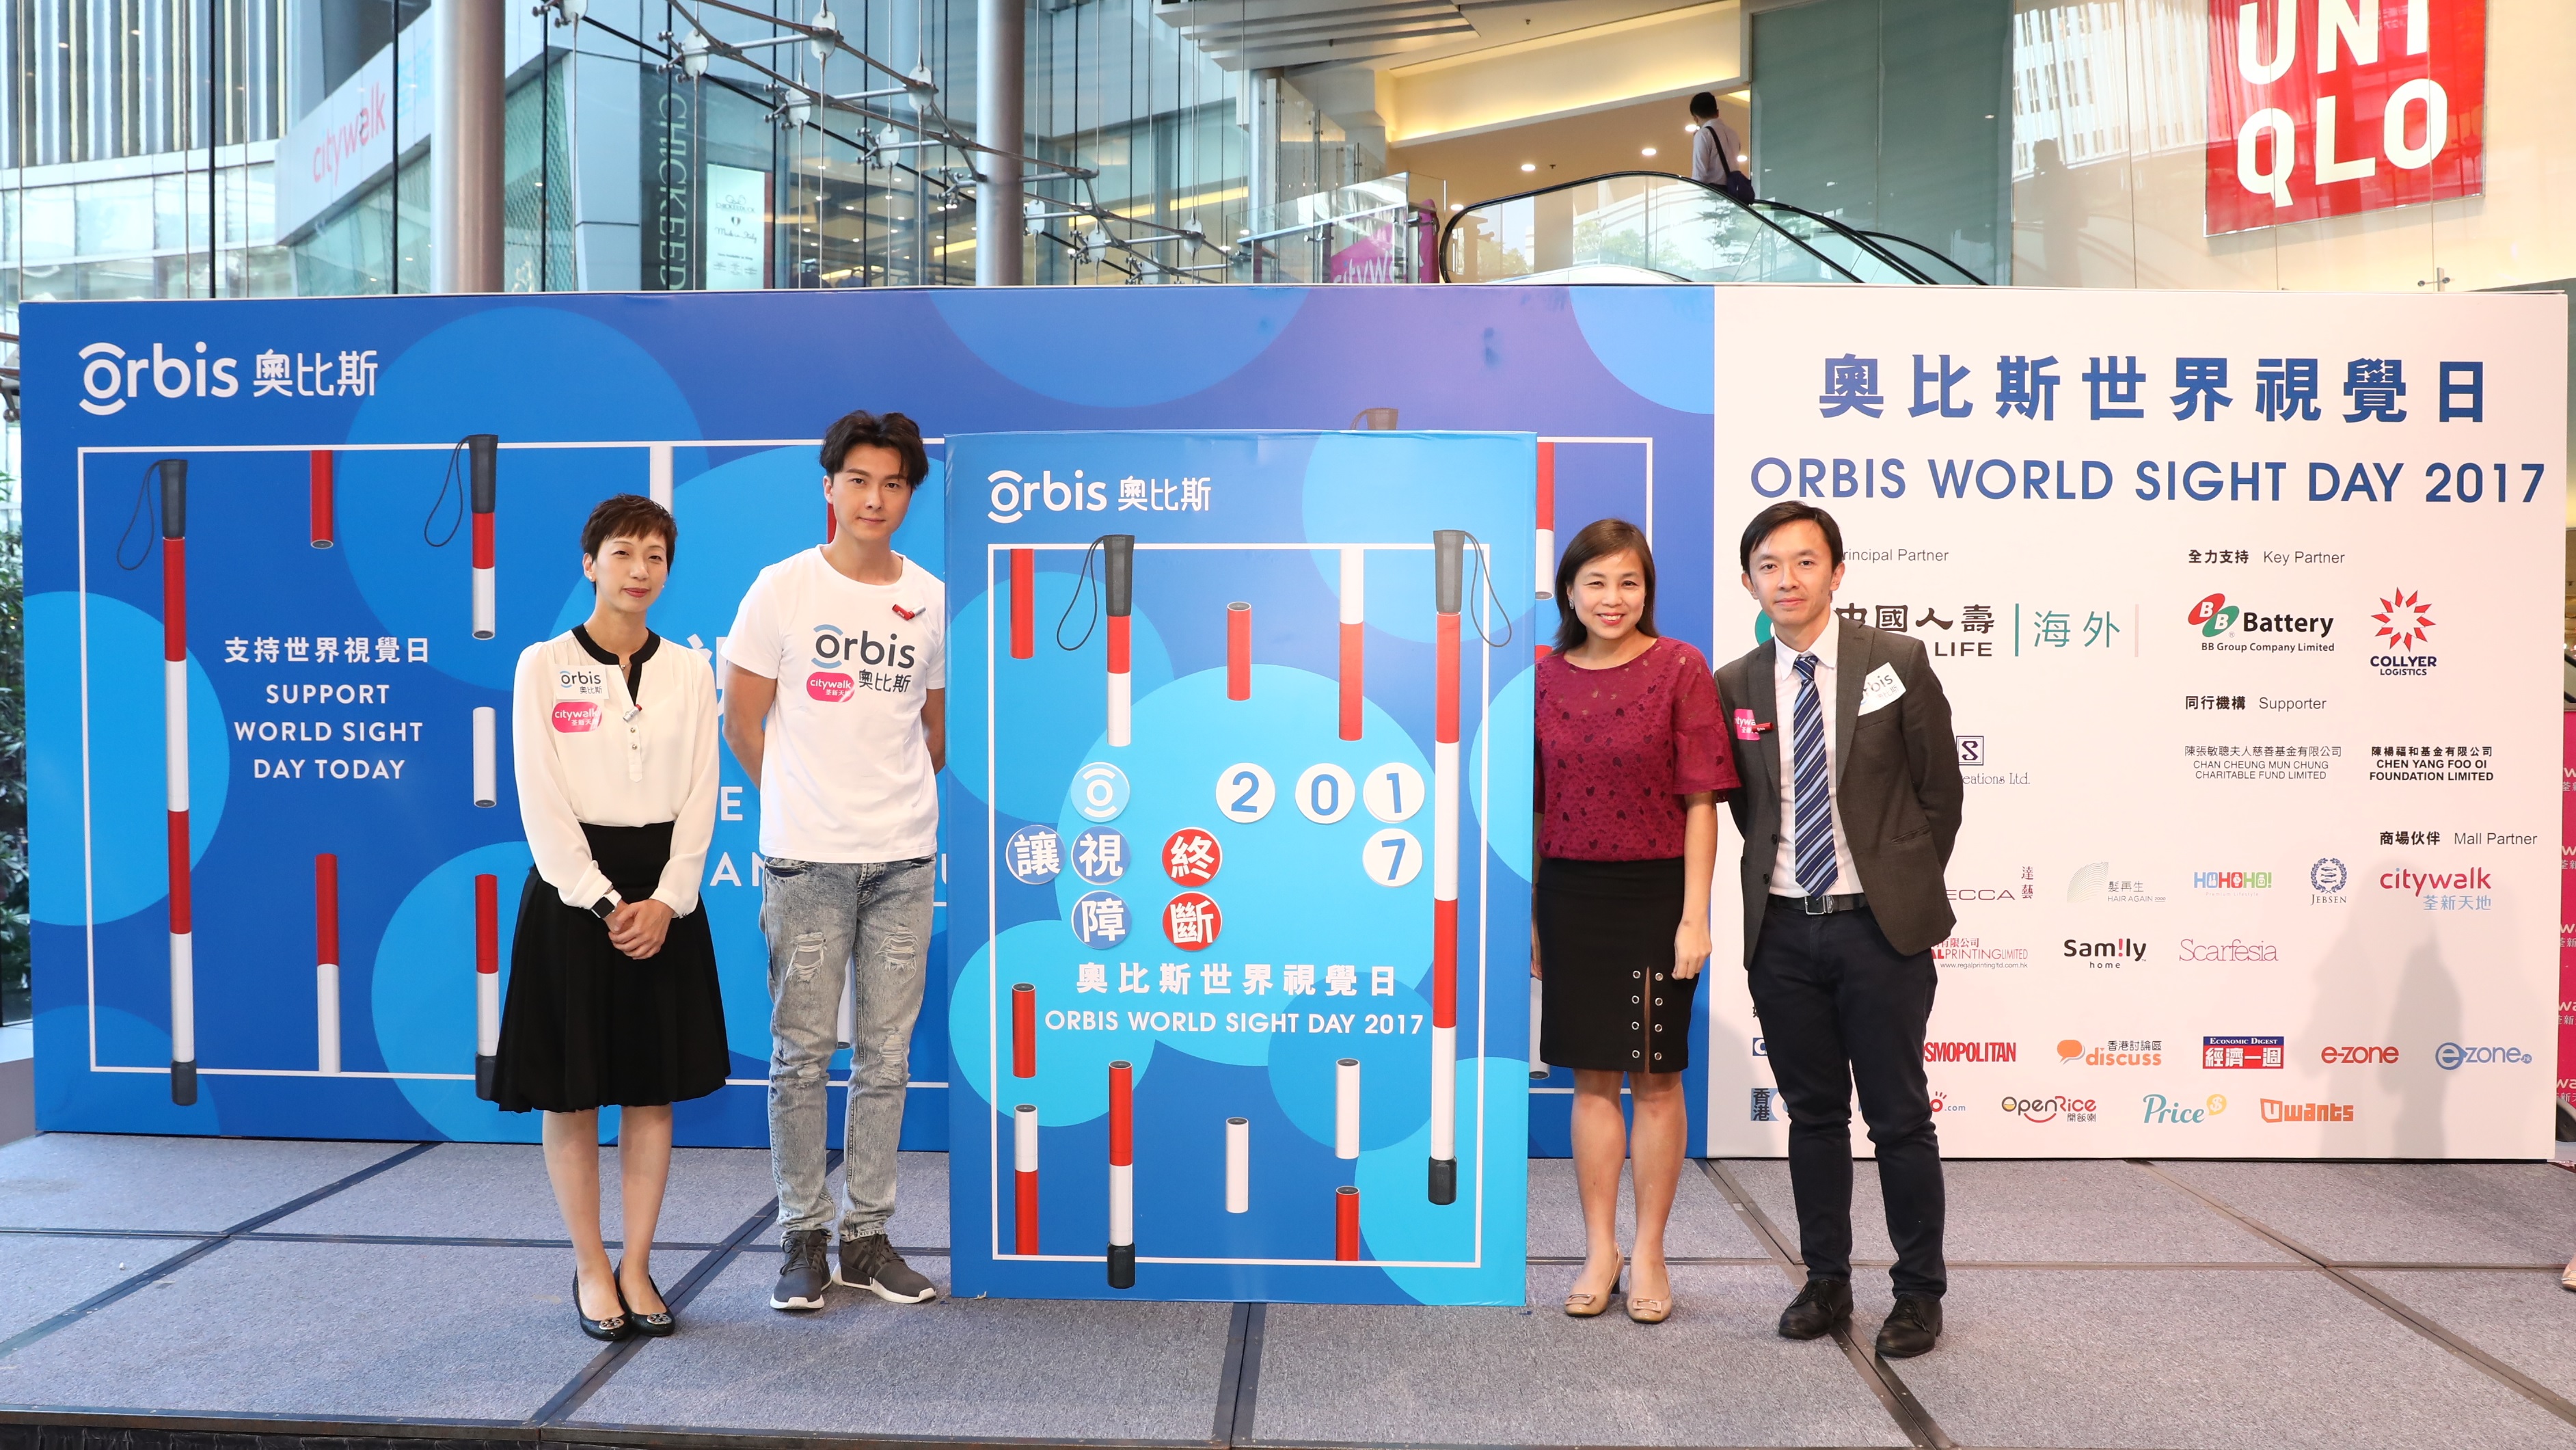 中國人壽（海外）成為「奧比斯世界視覺日」首席伙伴，榮獲「最高籌款金額機構 - 冠軍」獎項，為眼疾患者帶來光明轉機